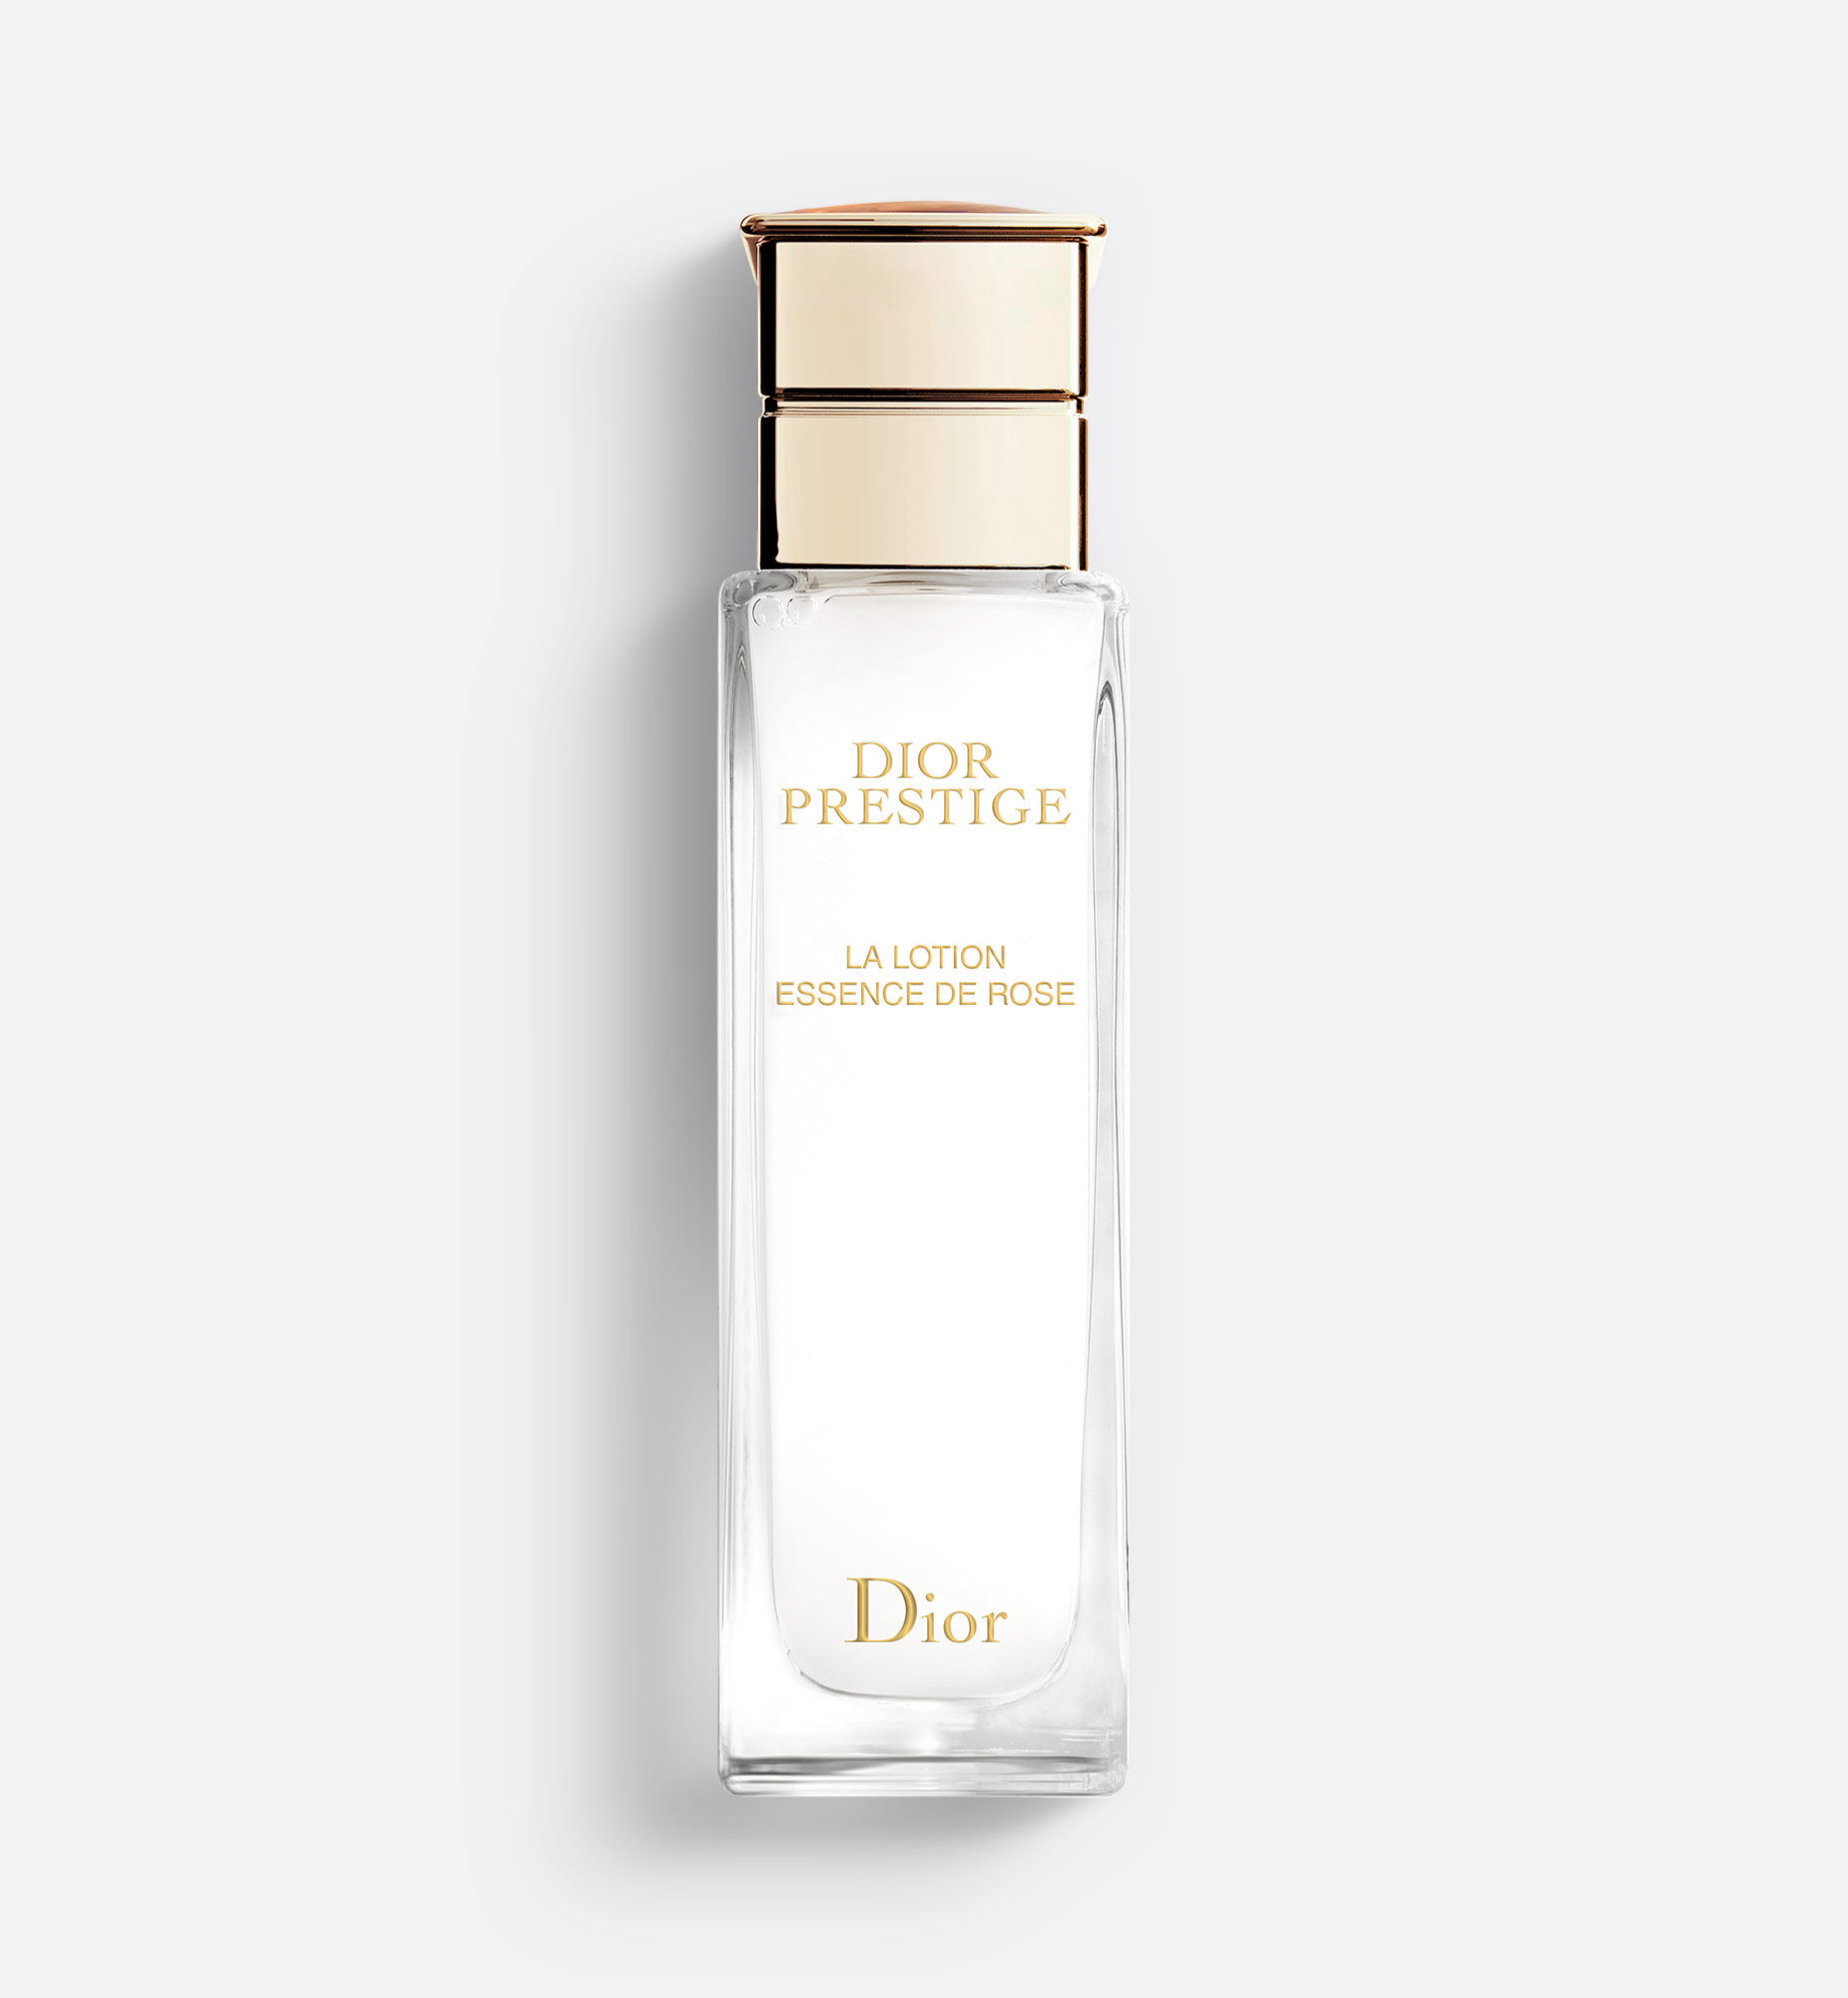 Dior ディオール プレステージ ラ ローション エッセンス150ml 化粧水/ローション 販売促進物